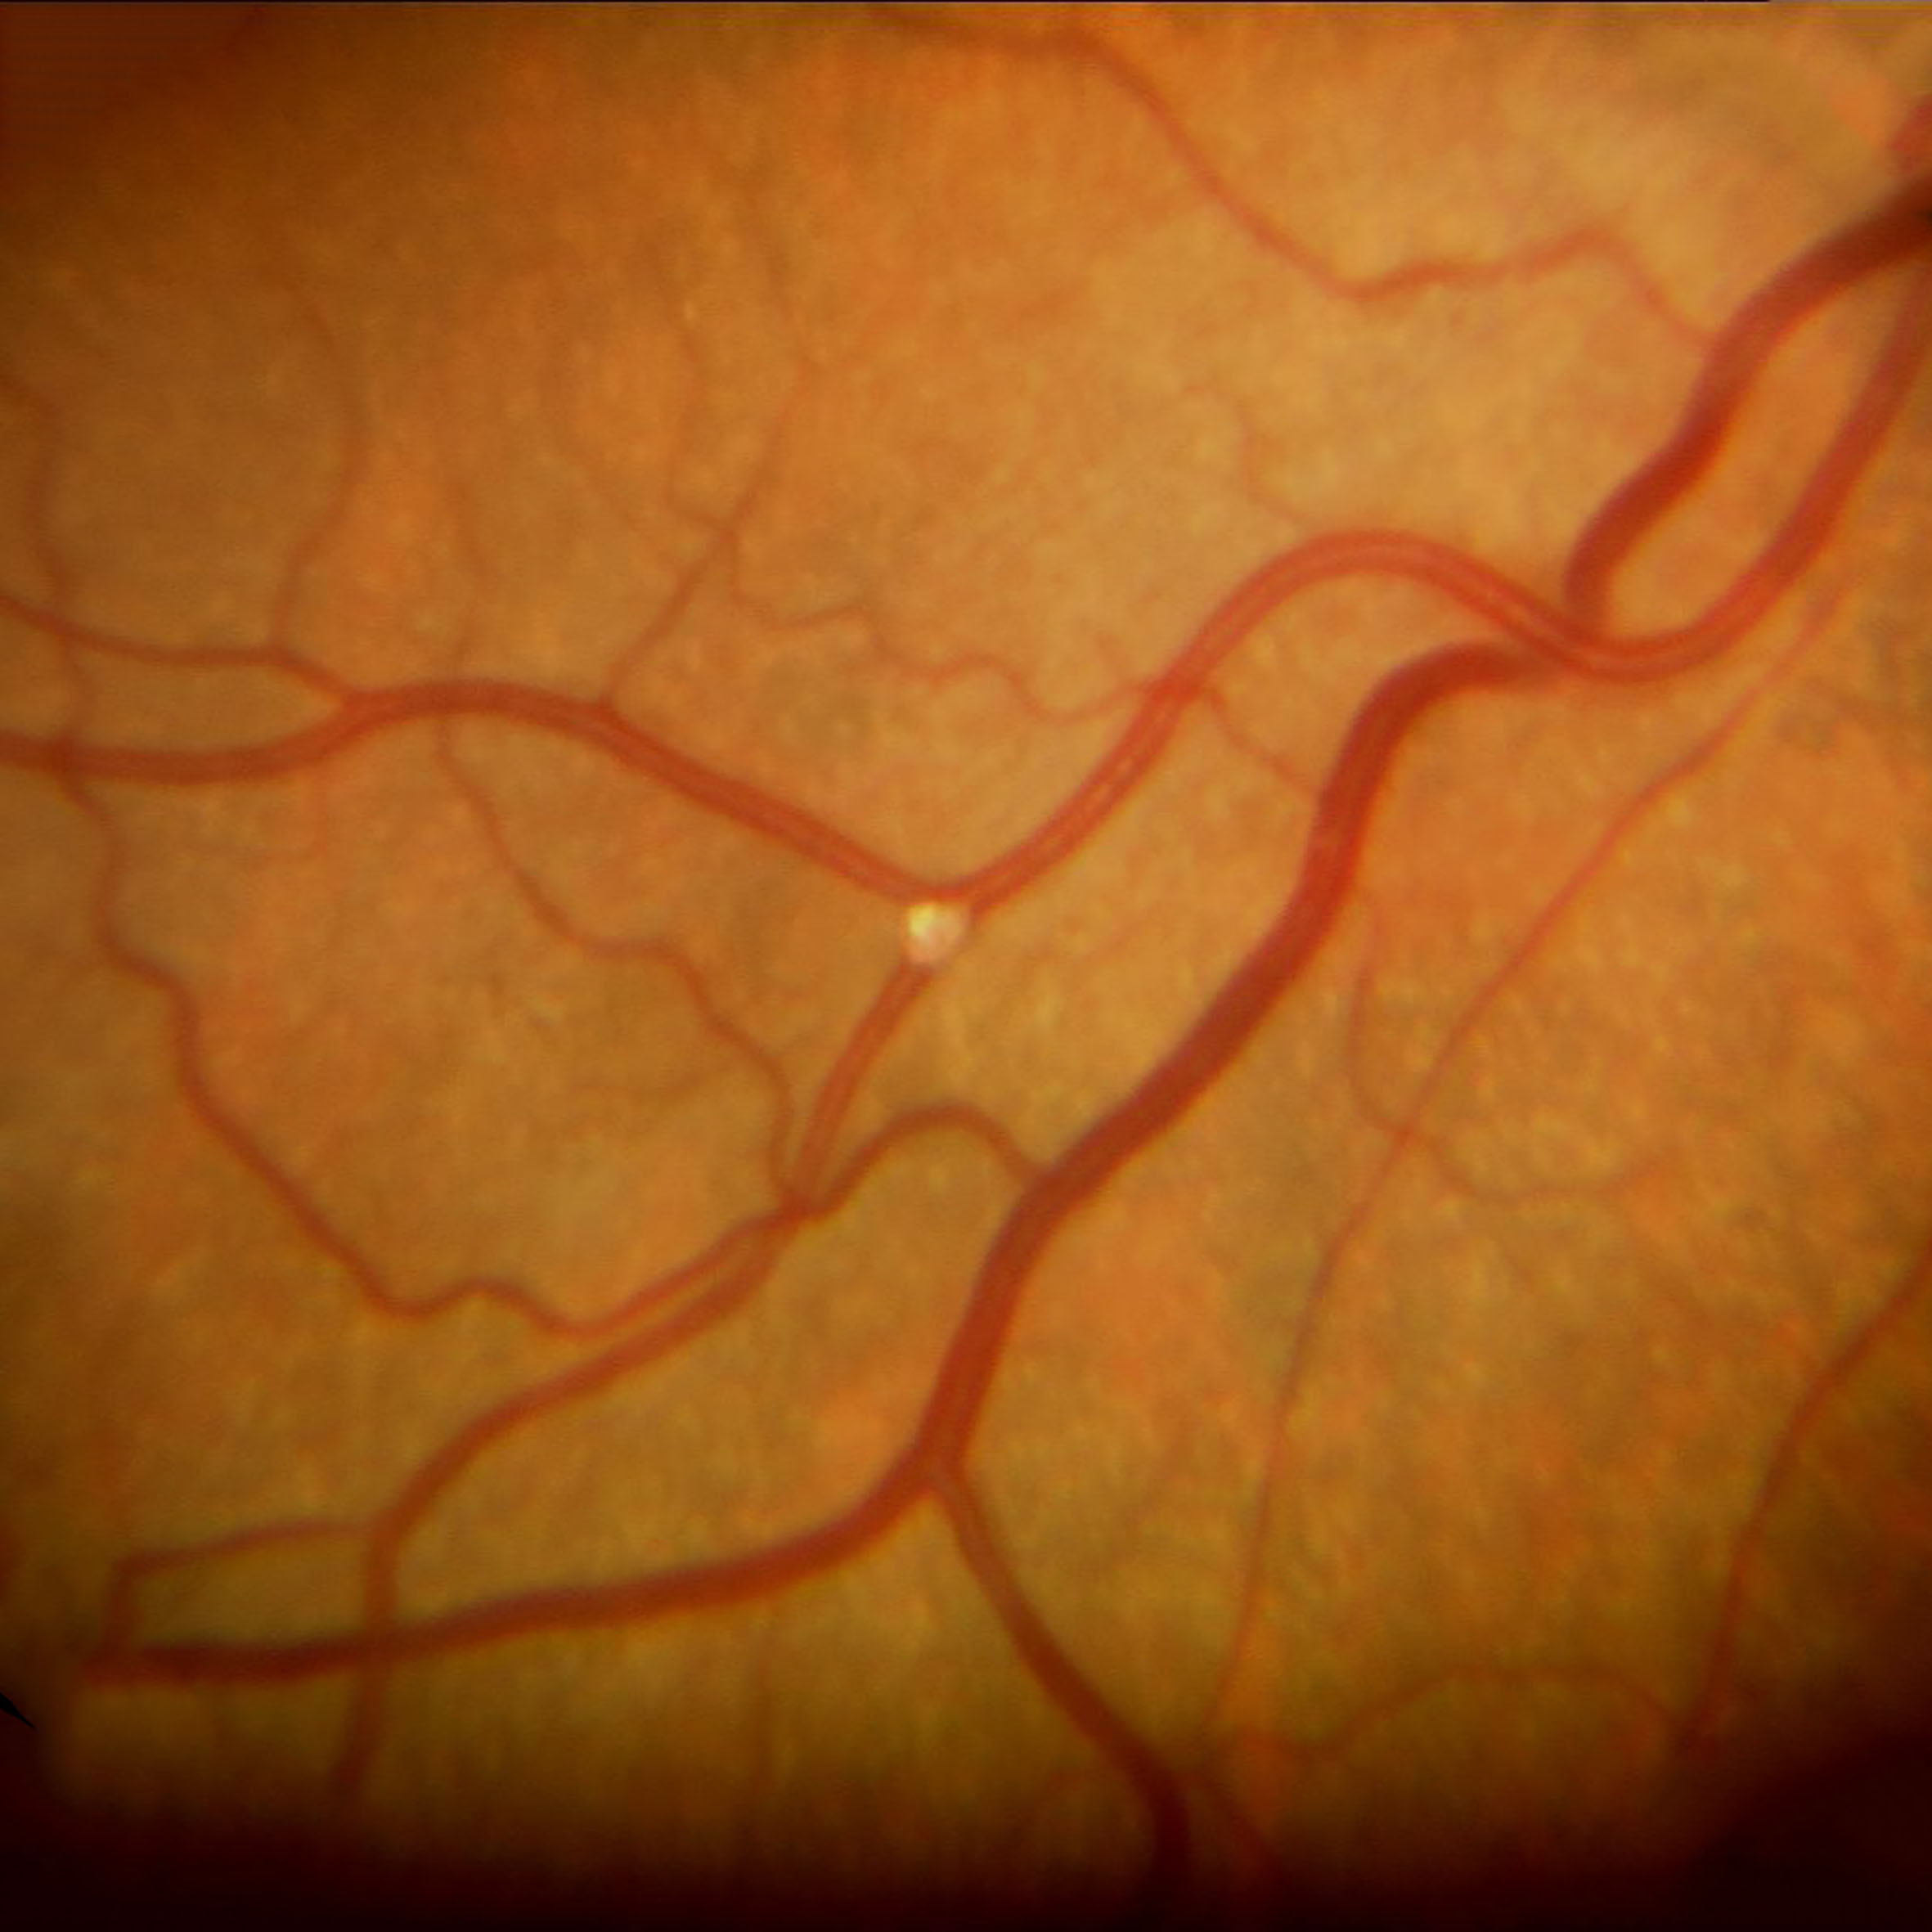 Verschluss eines retinalen Gefäßes durch einen weisslichen Embolus